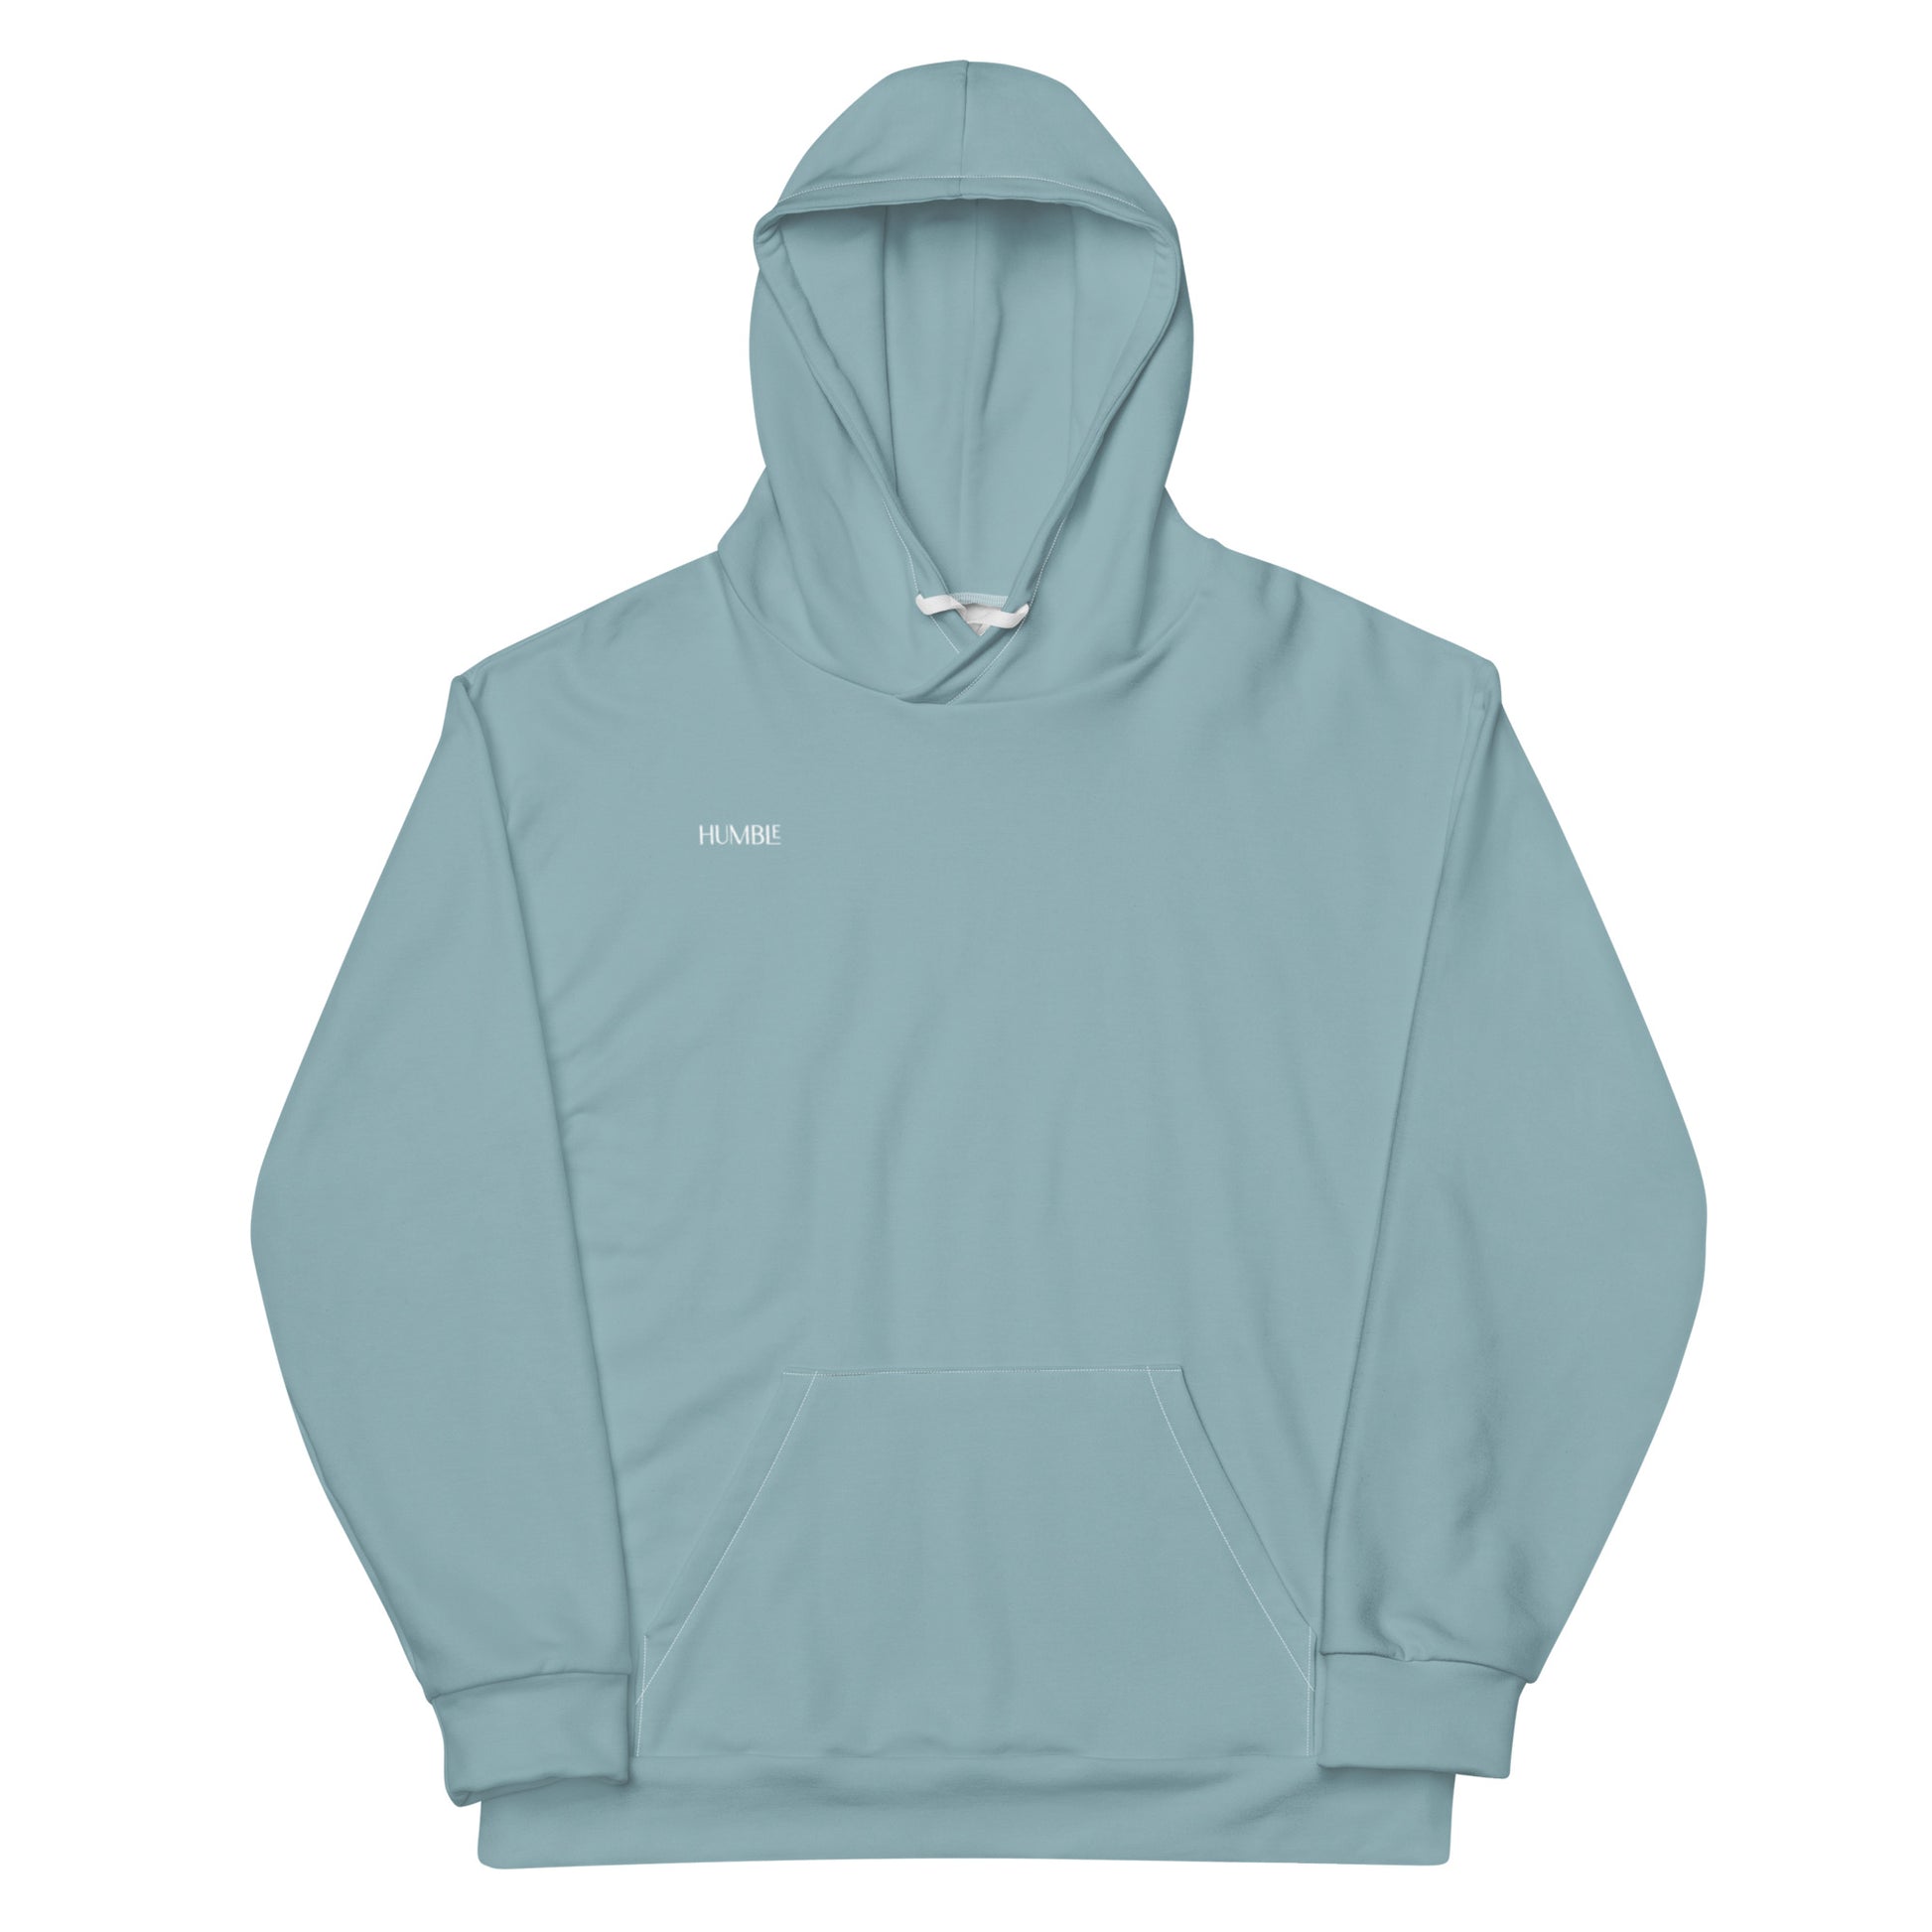 Humble Sportswear, men’s hoodies, slim fit hoodies for men, men’s casual hoodies, color match hoodies